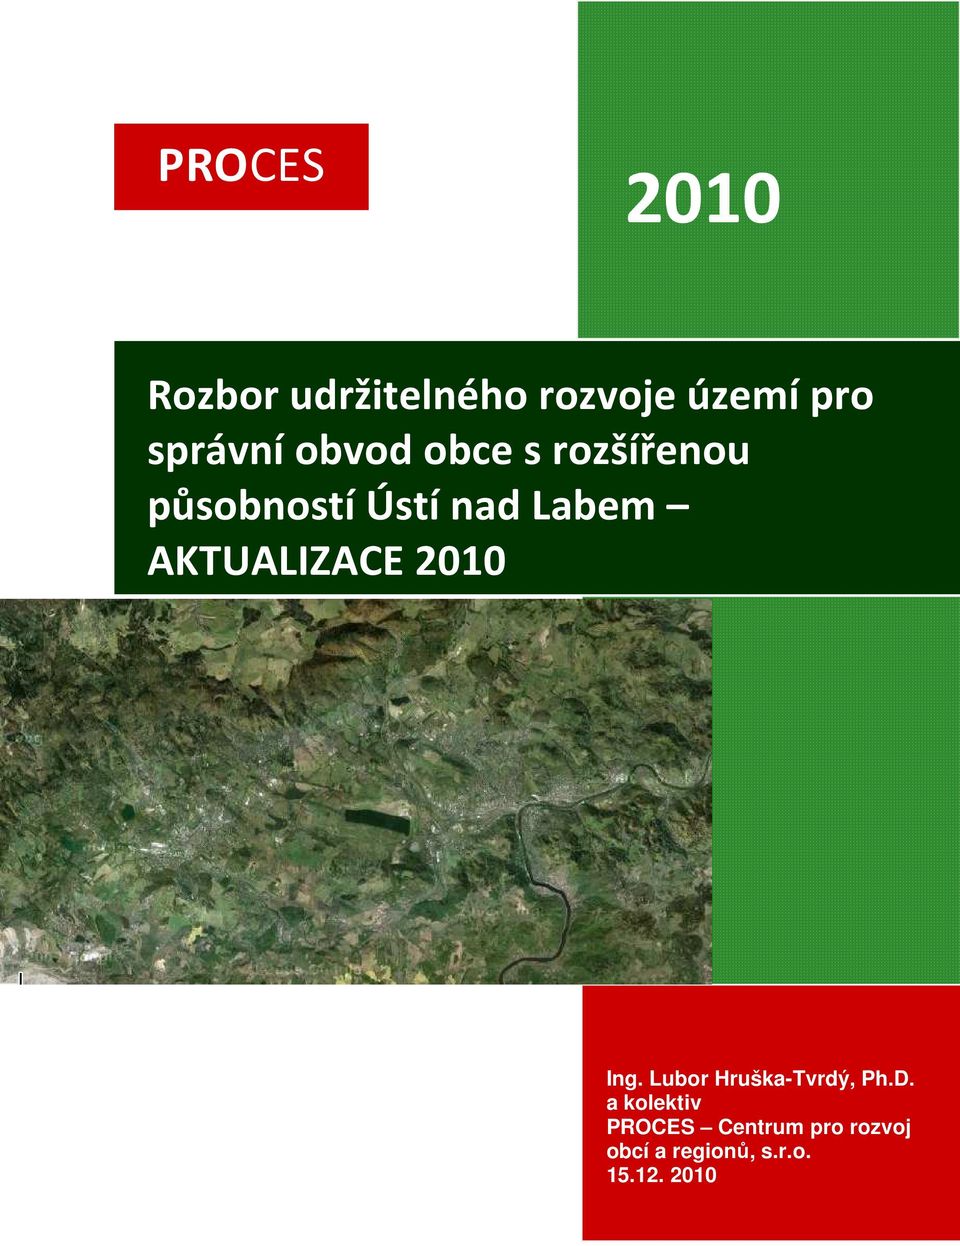 AKTUALIZACE 2010 Ing. Lubor Hruška-Tvrdý, Ph.D.